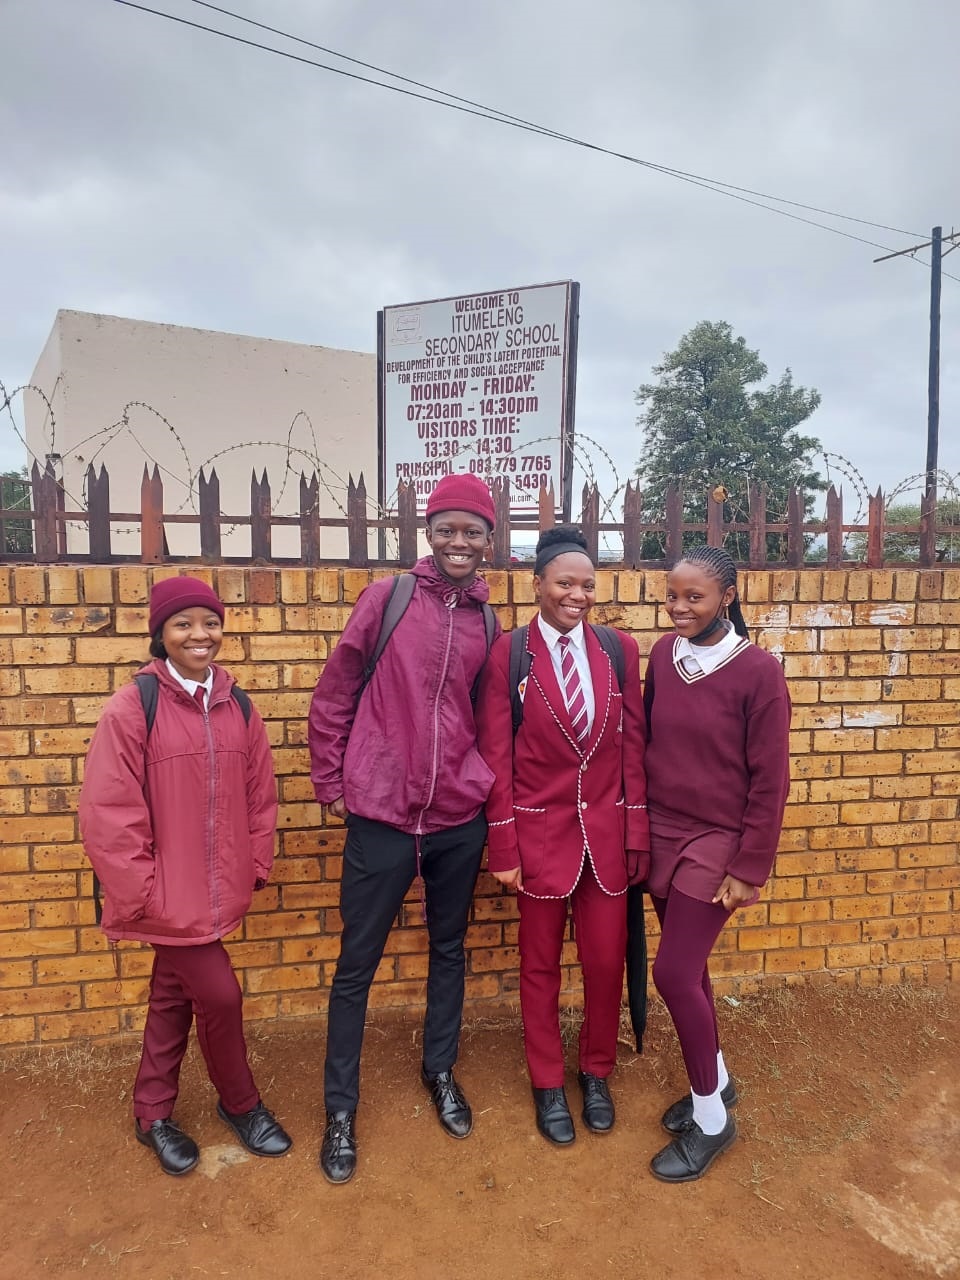 From left: Reneilwe Masilo, Omphemetse Zeni, Buhle Zwane and Kebareng Poopedi from Itumeleng Secondary School. Photo by Rapula Mancai